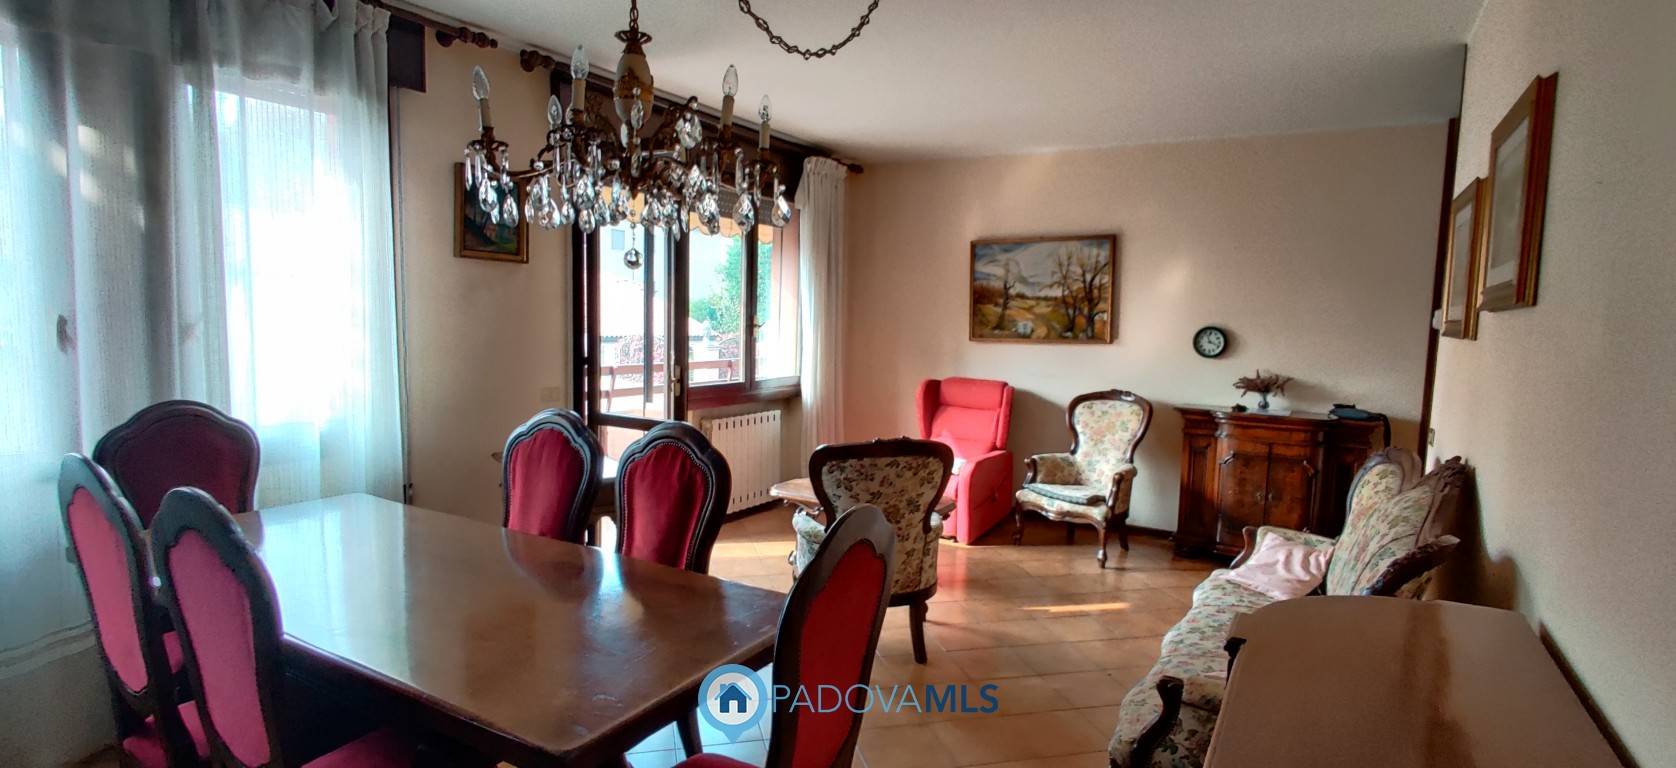 Appartamento in vendita a Cadoneghe, 4 locali, zona Località: MEIANIGA, prezzo € 155.000 | PortaleAgenzieImmobiliari.it